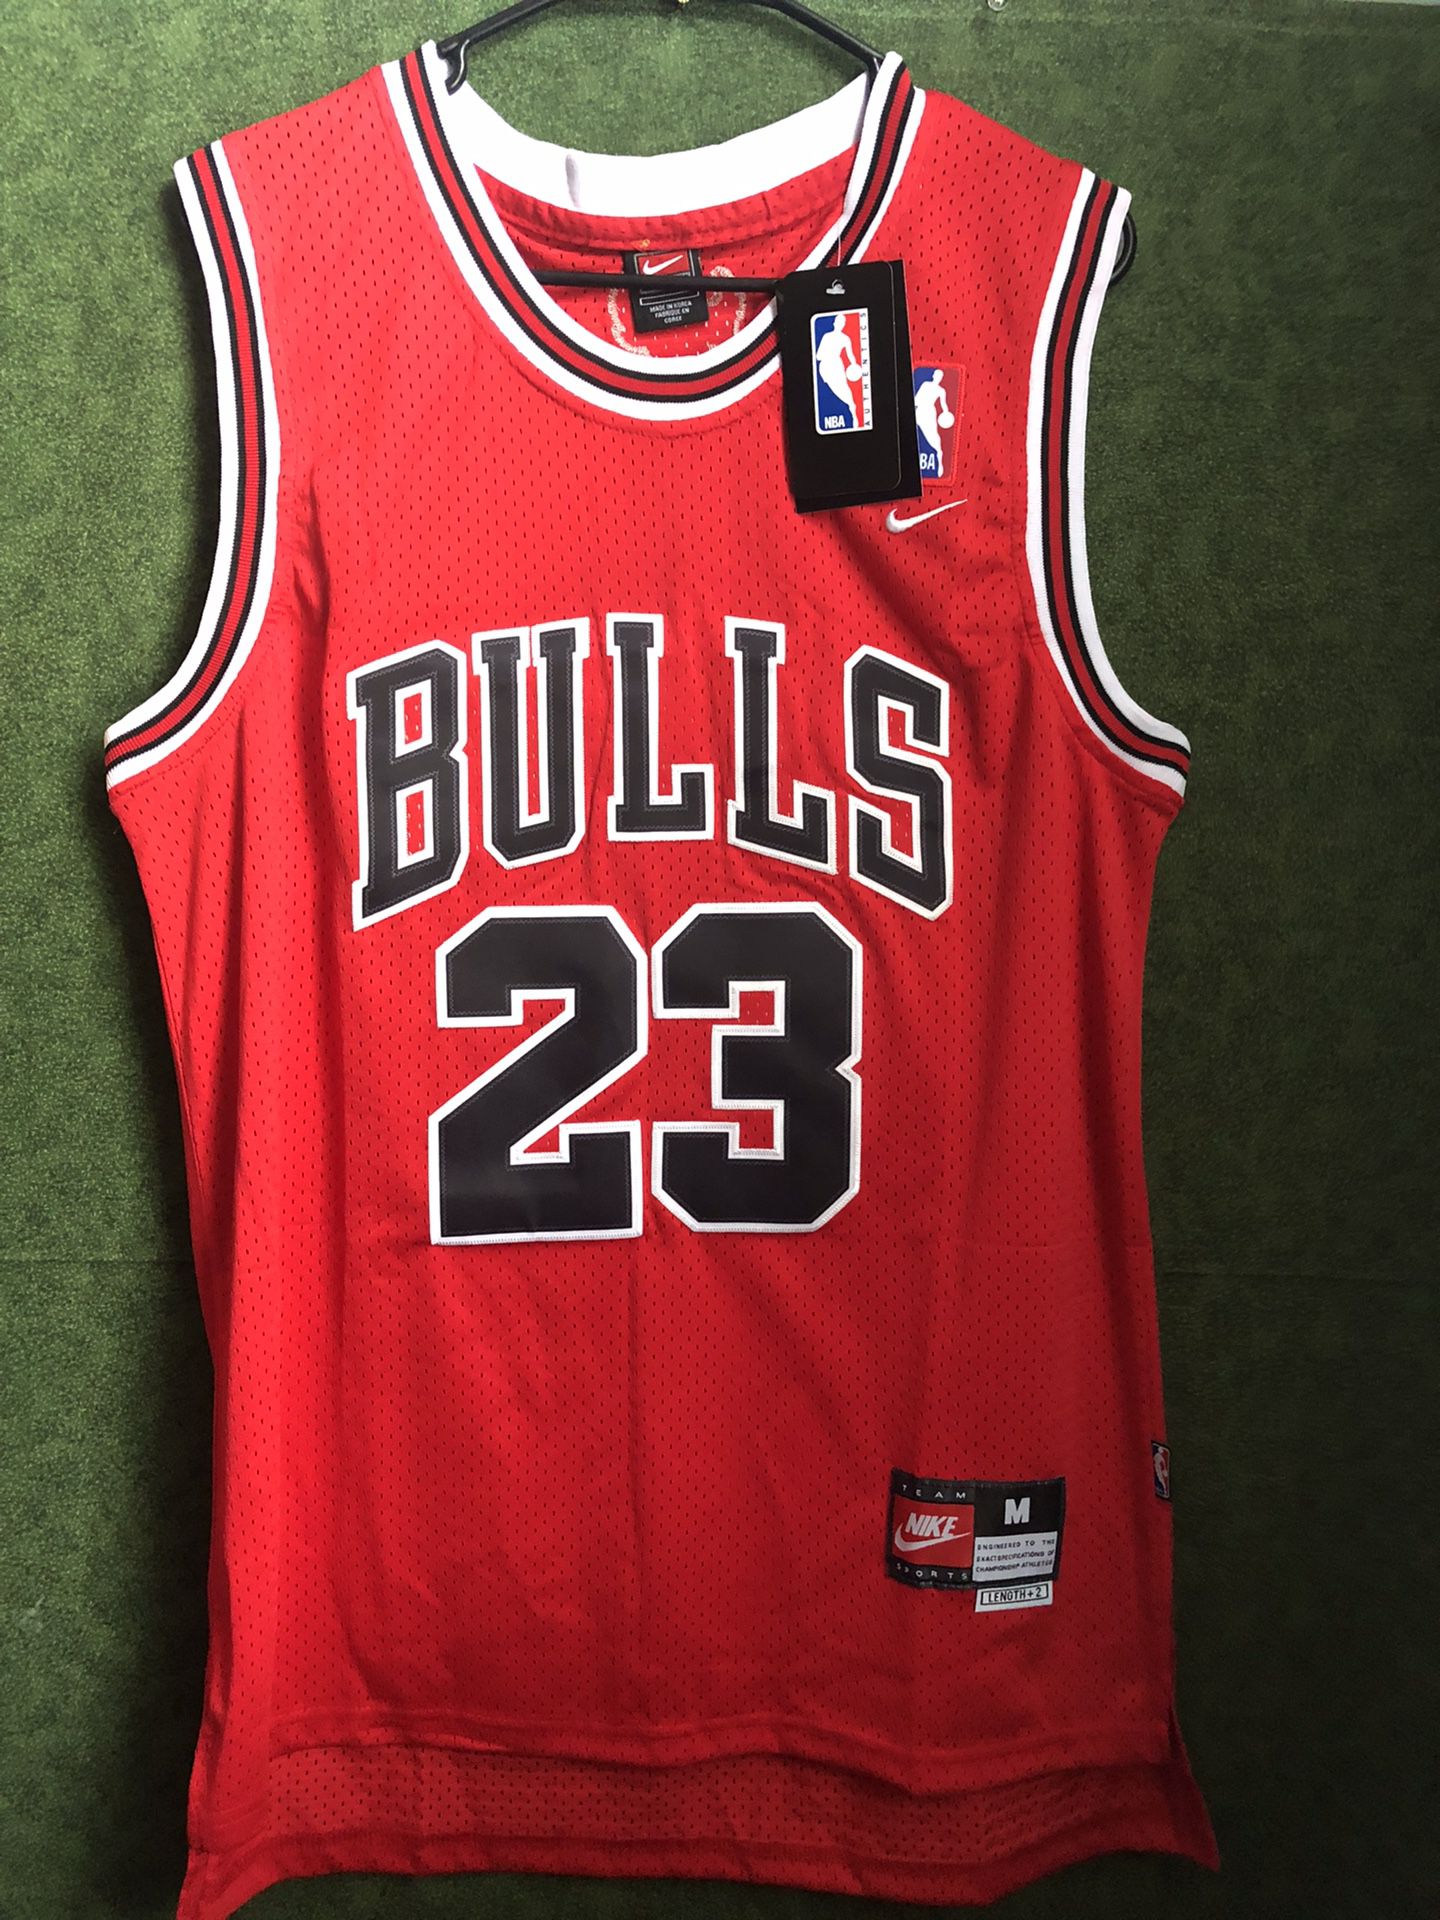 NEW - Mens Stitched Nike NBA Jersey - Michael Jordan - Bulls - M-XL